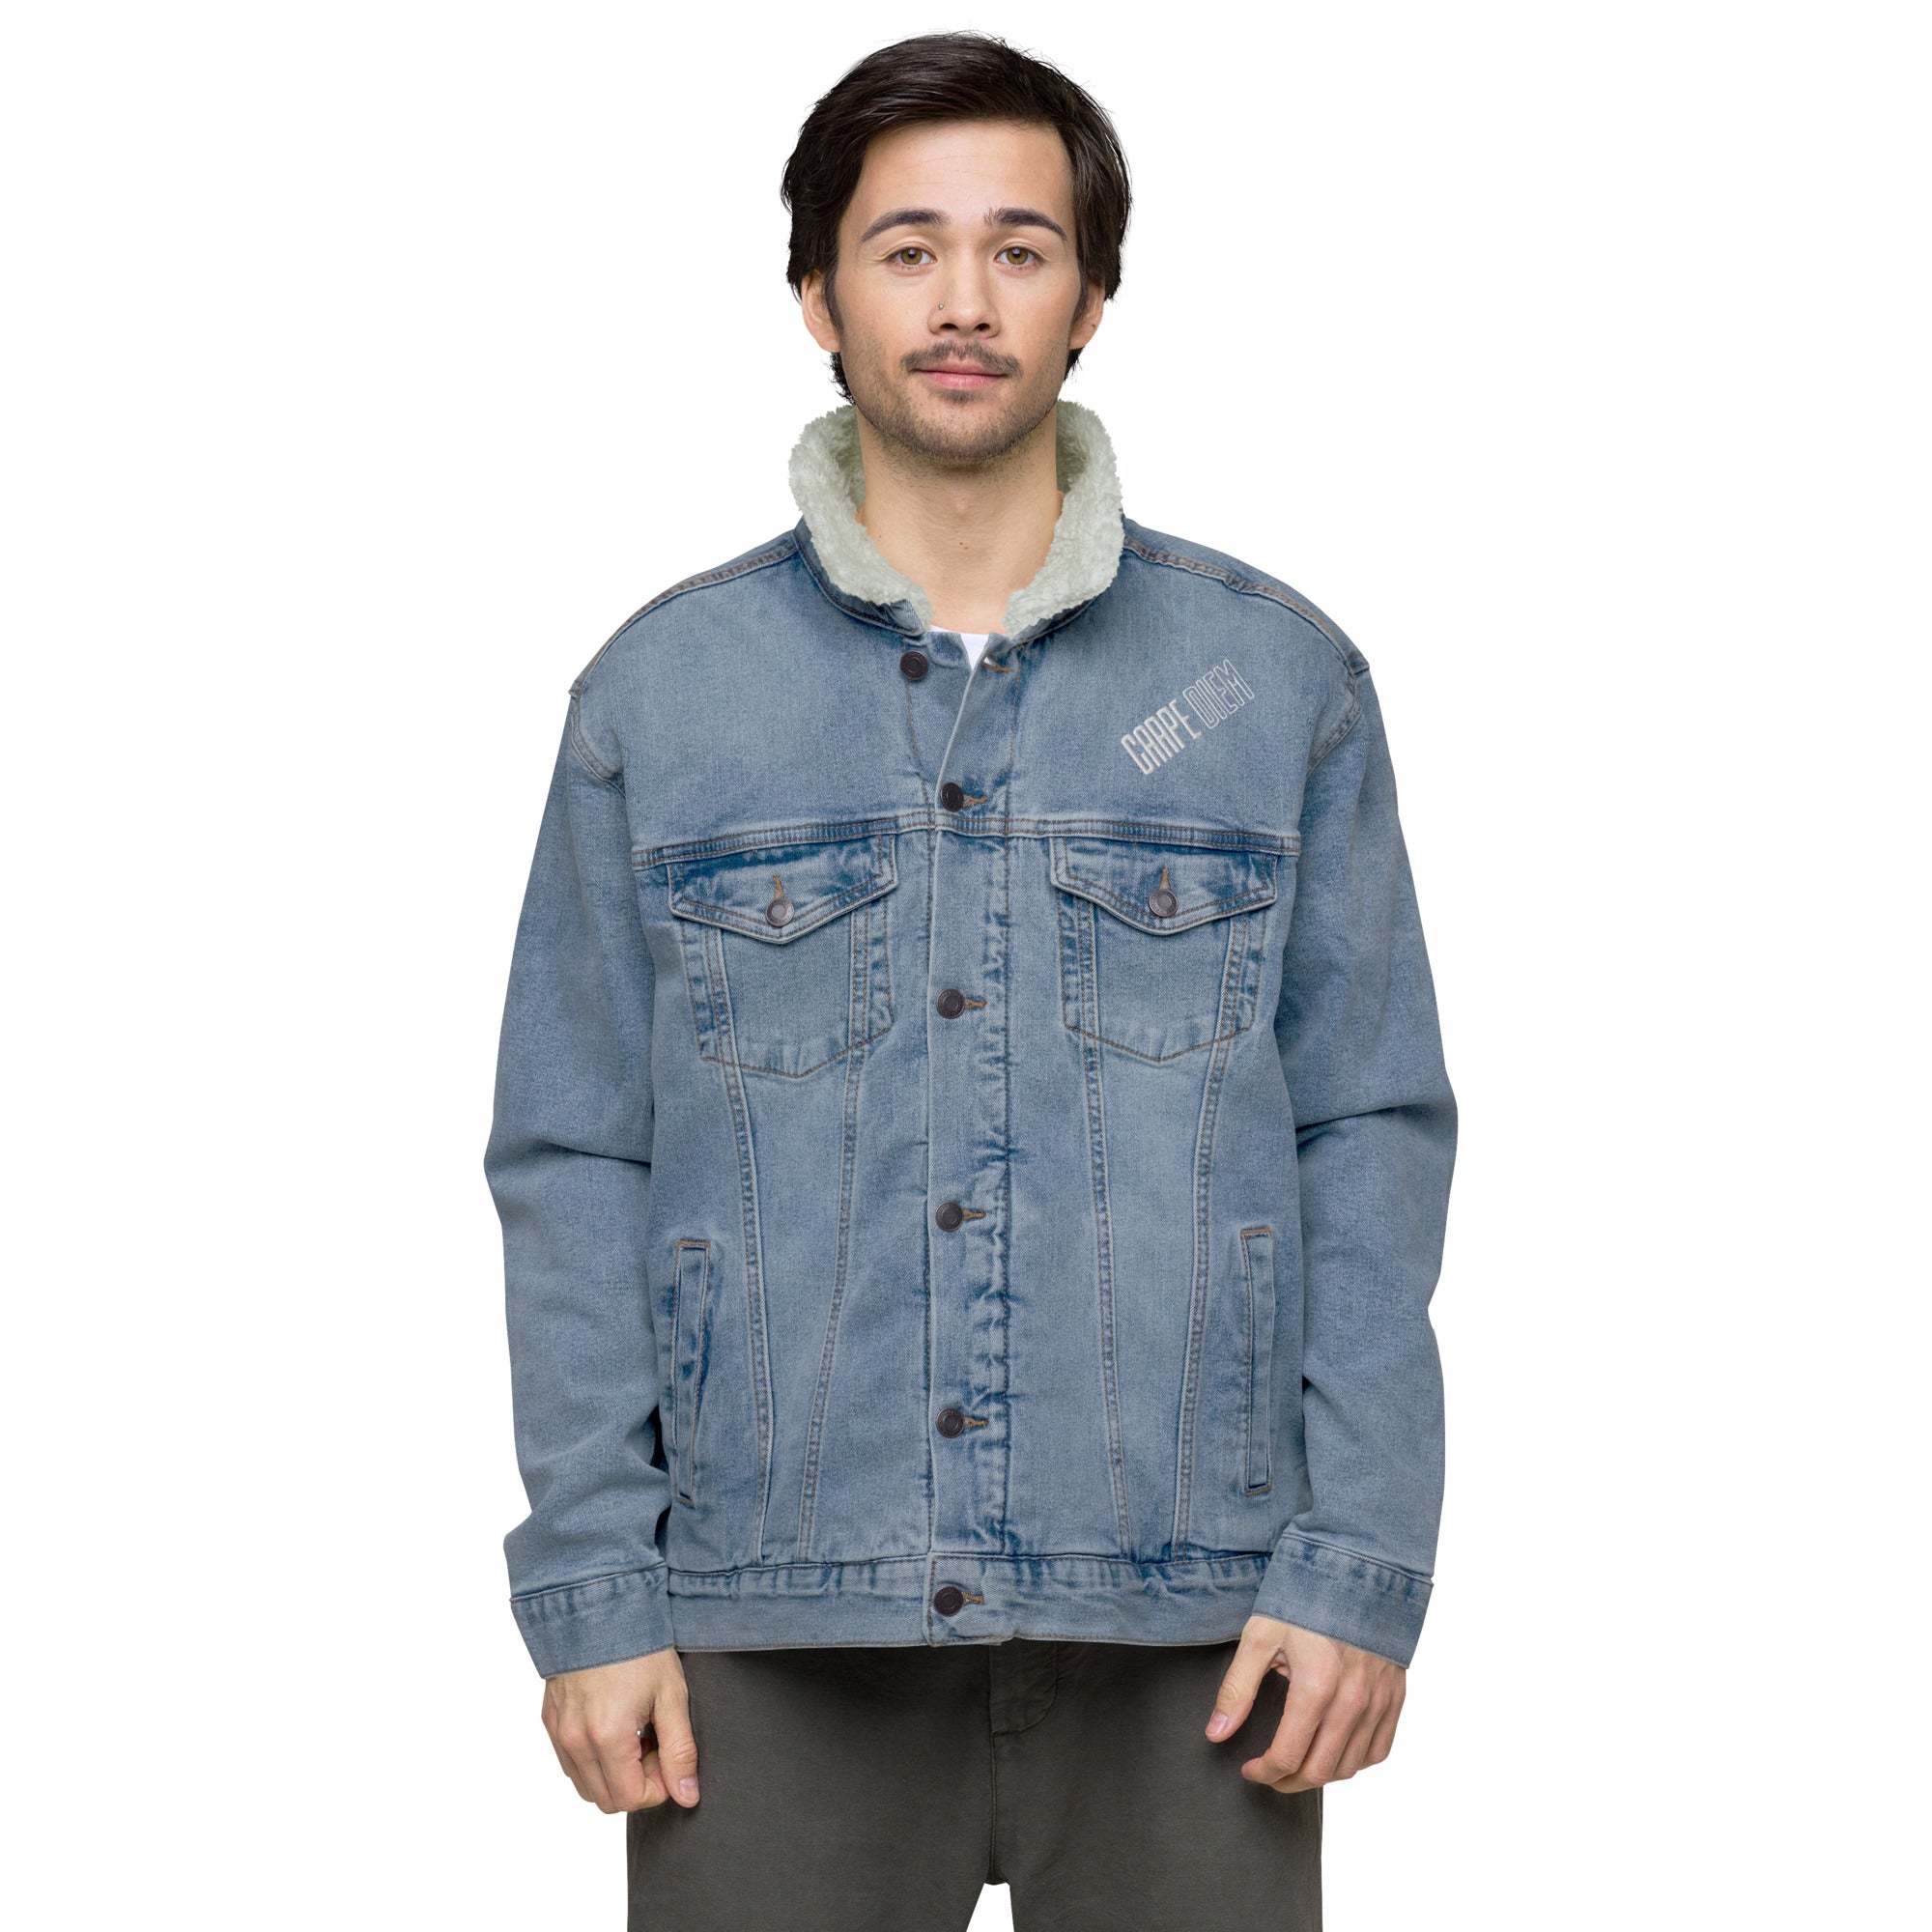 Amazon.com: PJRYC Plus Velvet Thick Denim Jacket Men Casual Lapel Cotton Jeans  Jacket Men Fur Collar Warm Winter Mens Jackets and Coats (Color : Dark  Blue, Size : X-Large) : Clothing, Shoes